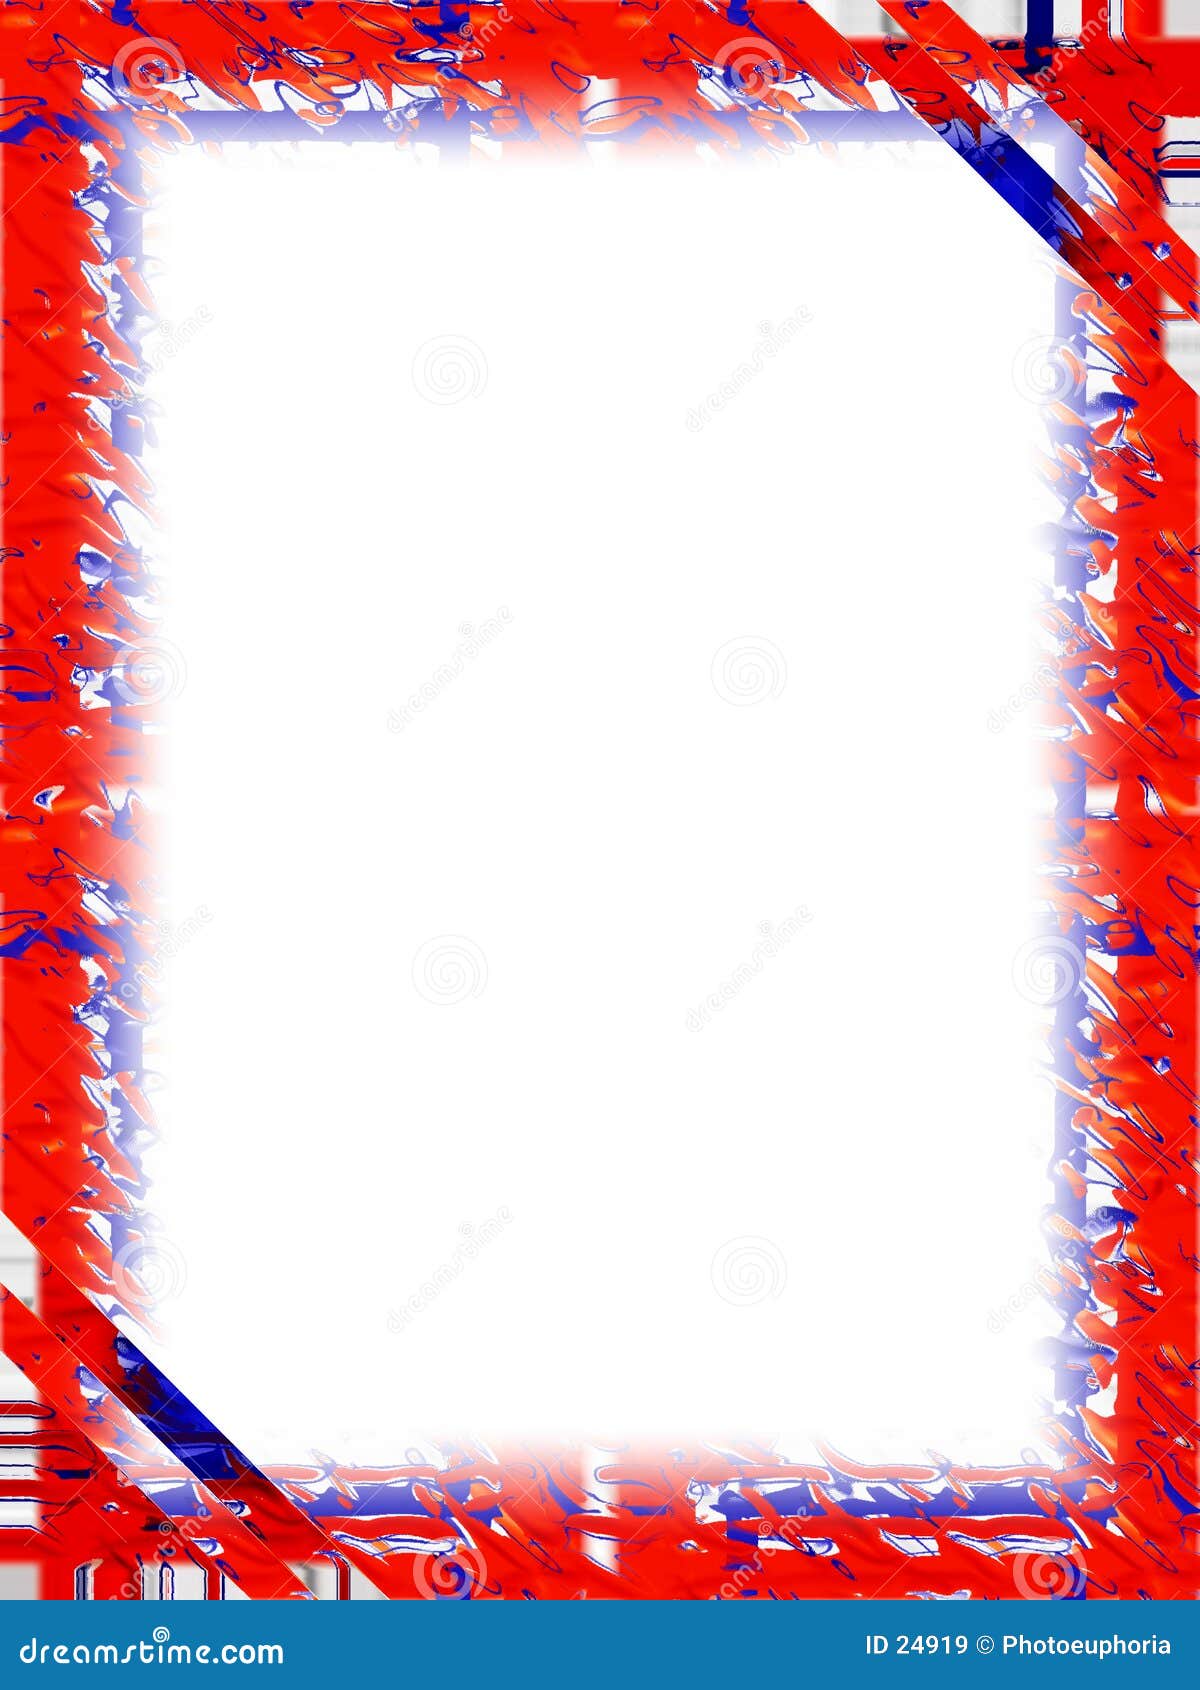 border: red white blue